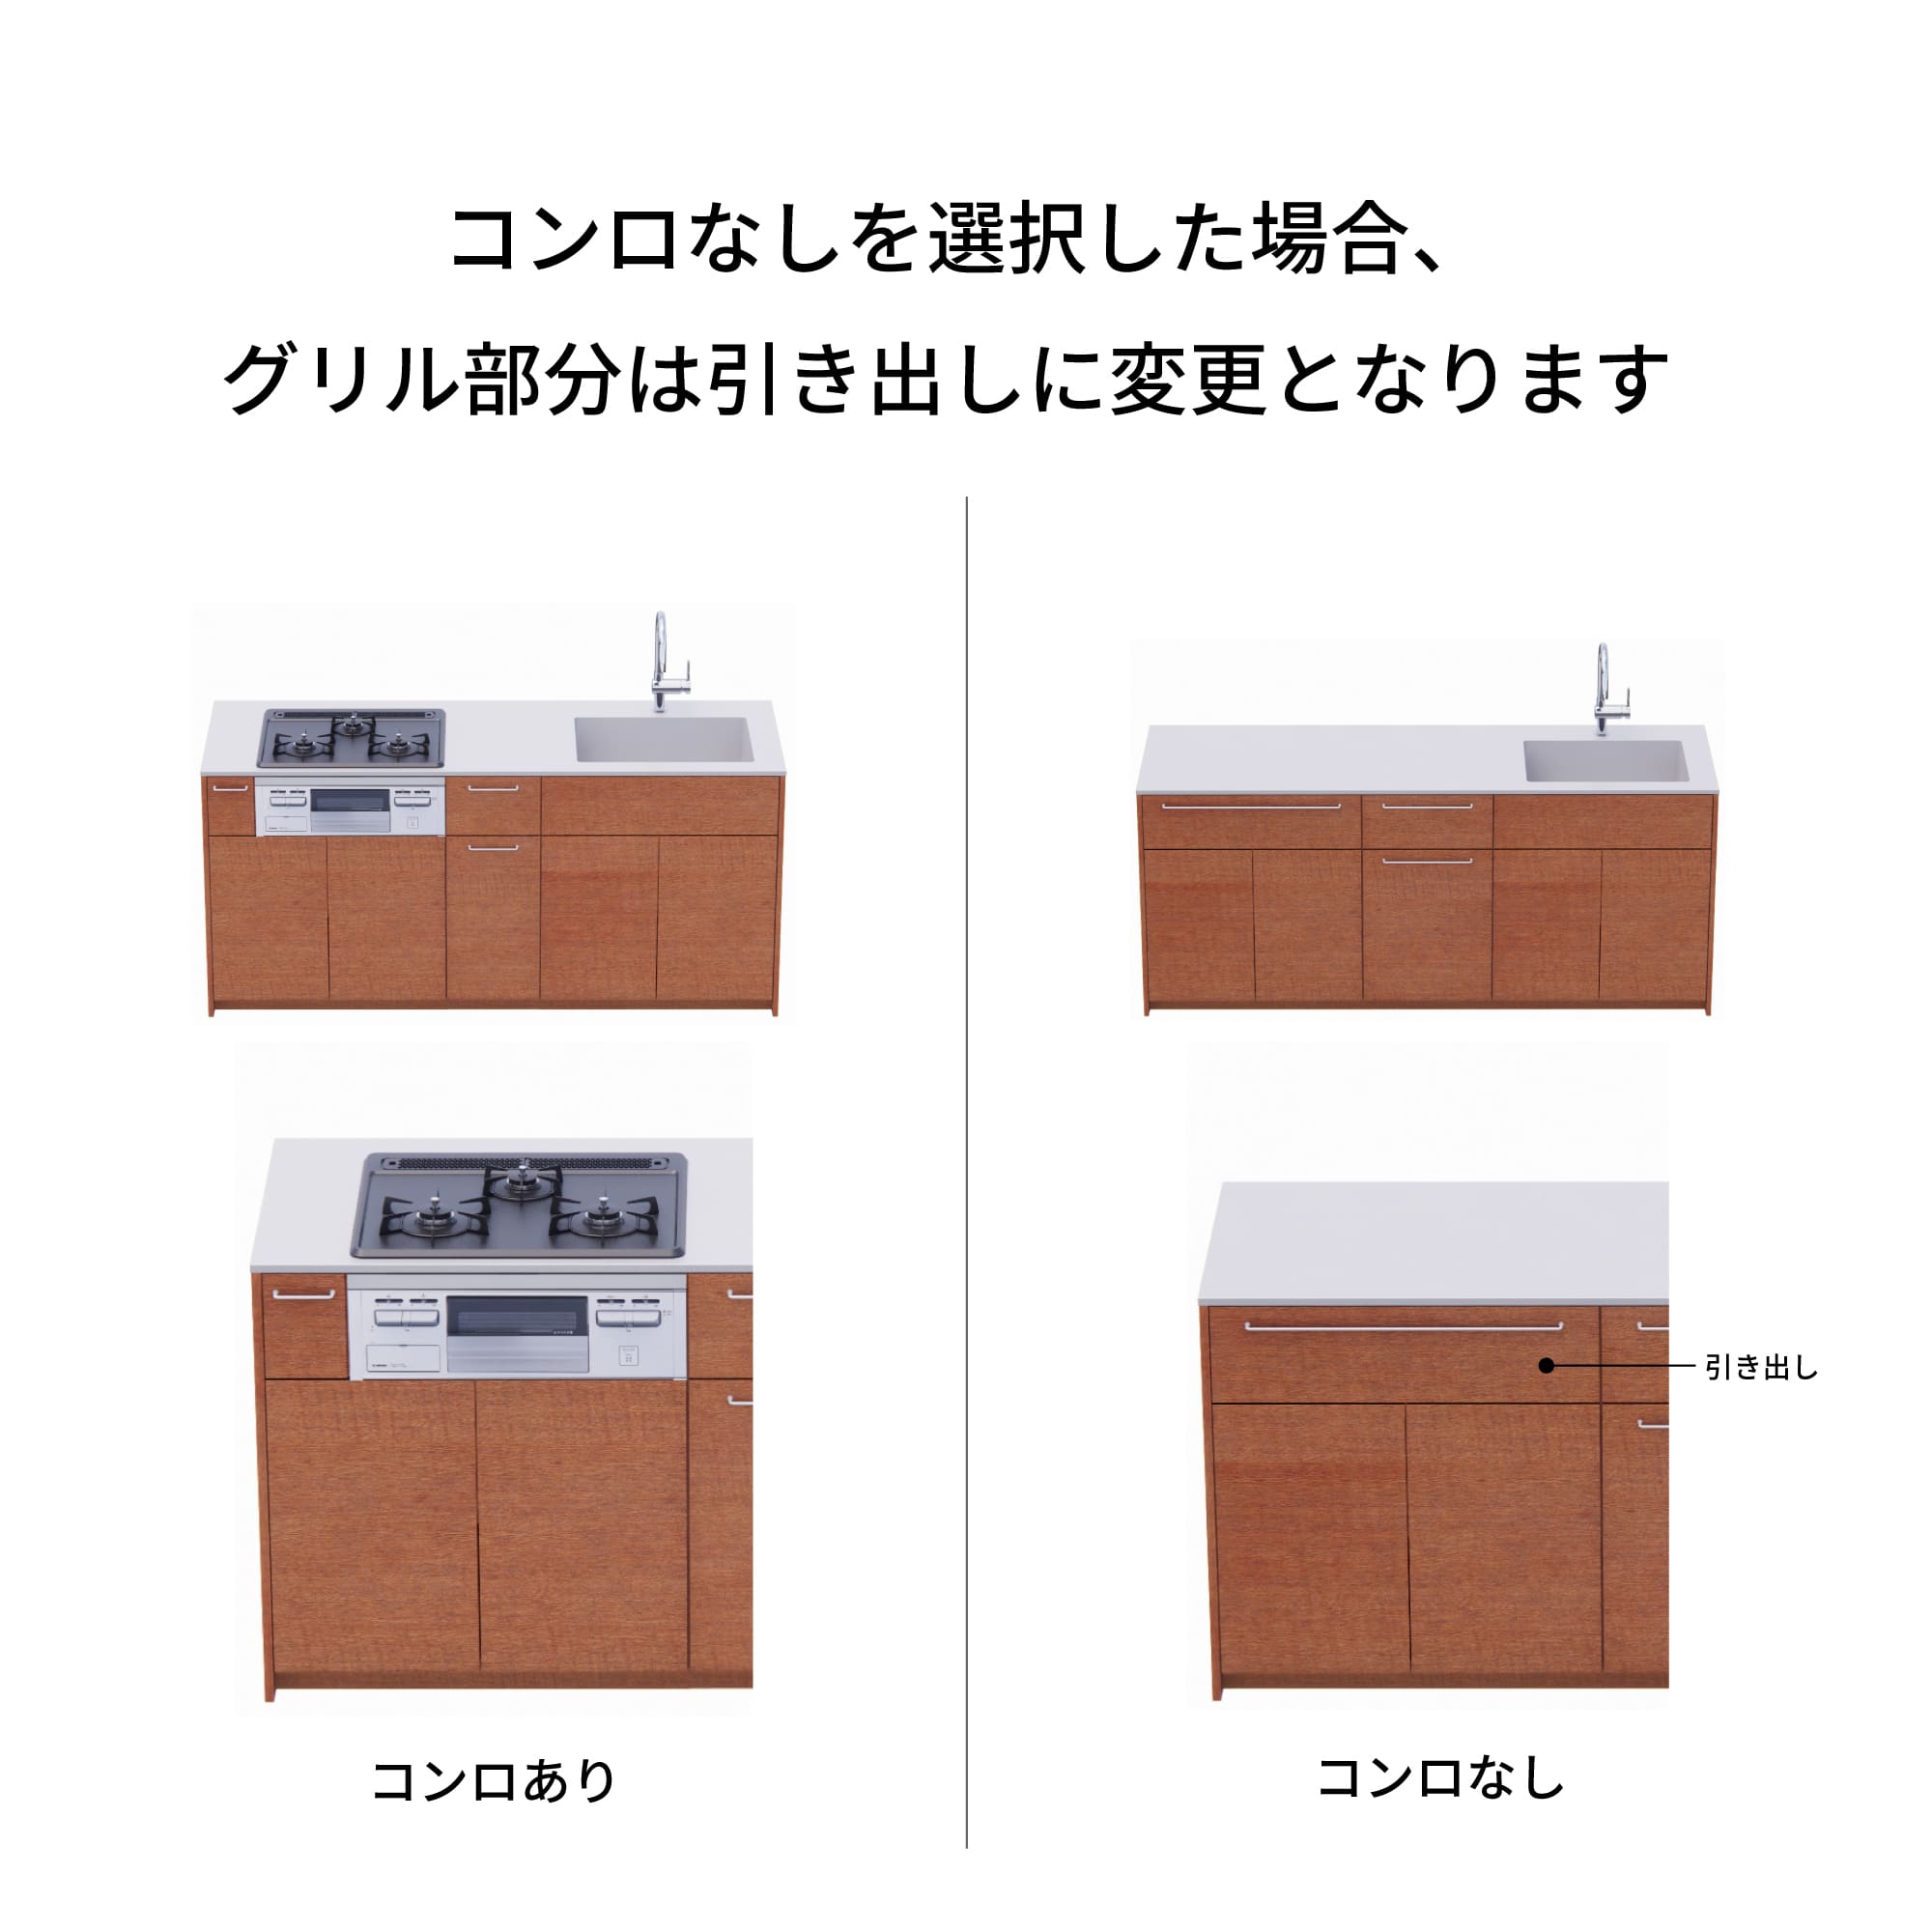 木製システムキッチン 壁付け型 W2140～2290・コンロなし / オーブンなし / 食洗機なし KB-KC022-18-G183 コンロ無しの場合、通常魚焼きグリルがある部分は引き出しになっています